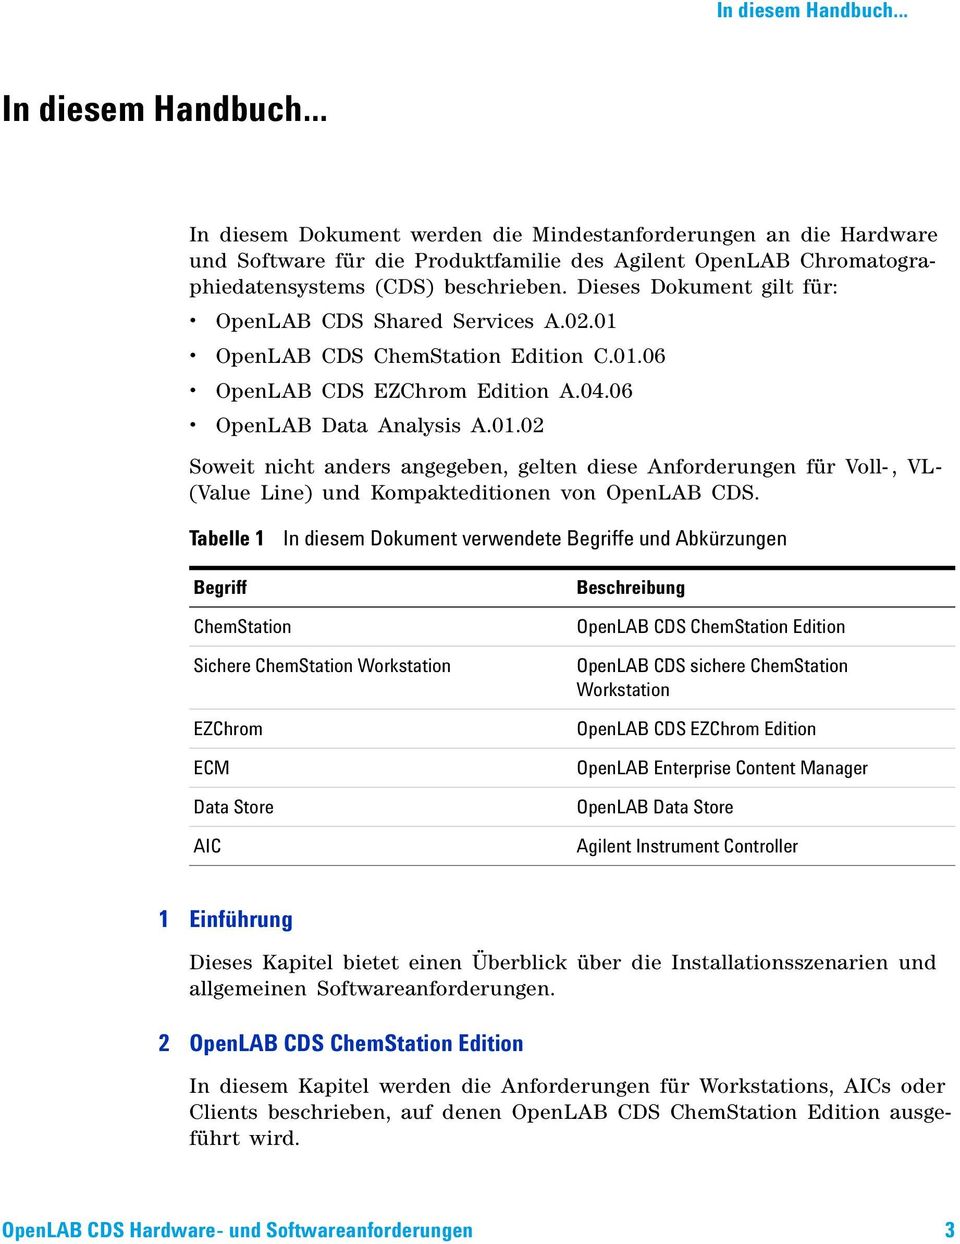 Dieses Dokument gilt für: OpenLAB CDS Shared Services A.02.01 OpenLAB CDS ChemStation Edition C.01.06 OpenLAB CDS EZChrom Edition A.04.06 OpenLAB Data Analysis A.01.02 Soweit nicht anders angegeben, gelten diese Anforderungen für Voll-, VL- (Value Line) und Kompakteditionen von OpenLAB CDS.